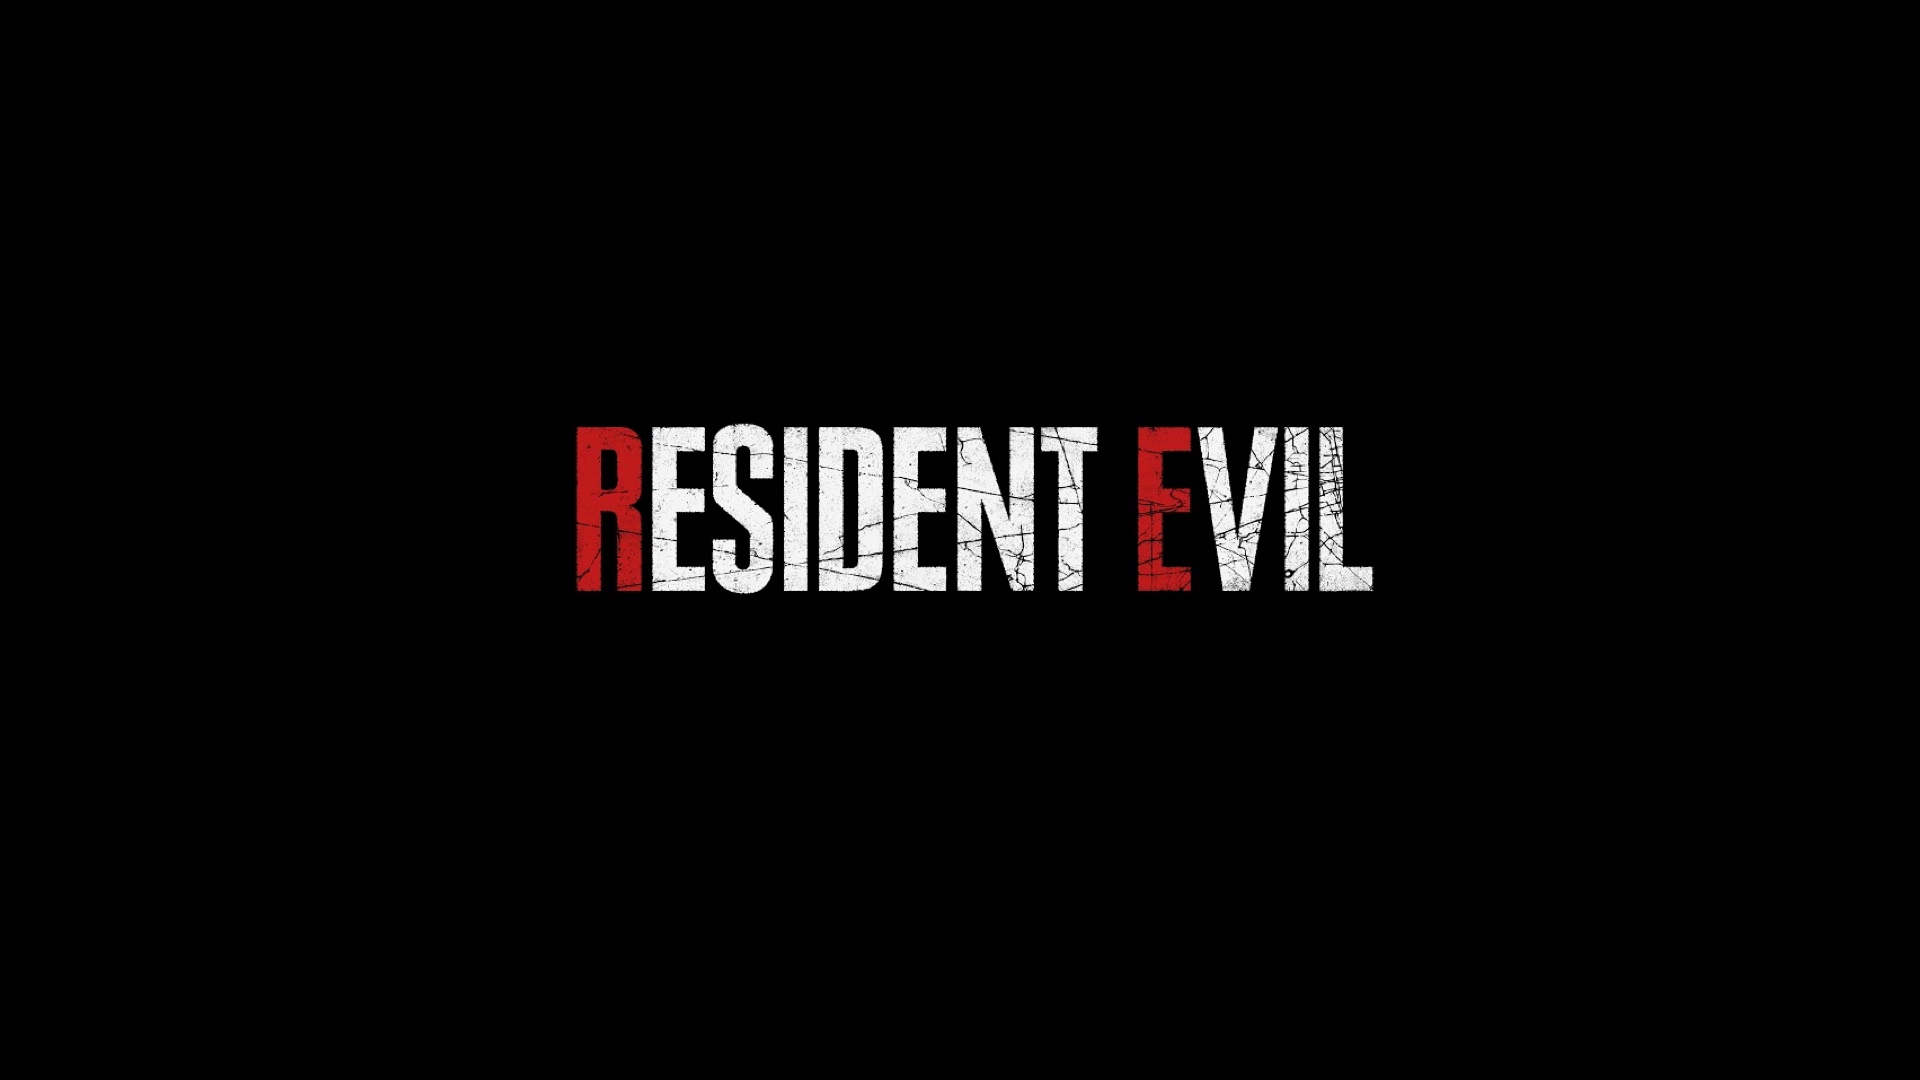 Logo de Resident Evil